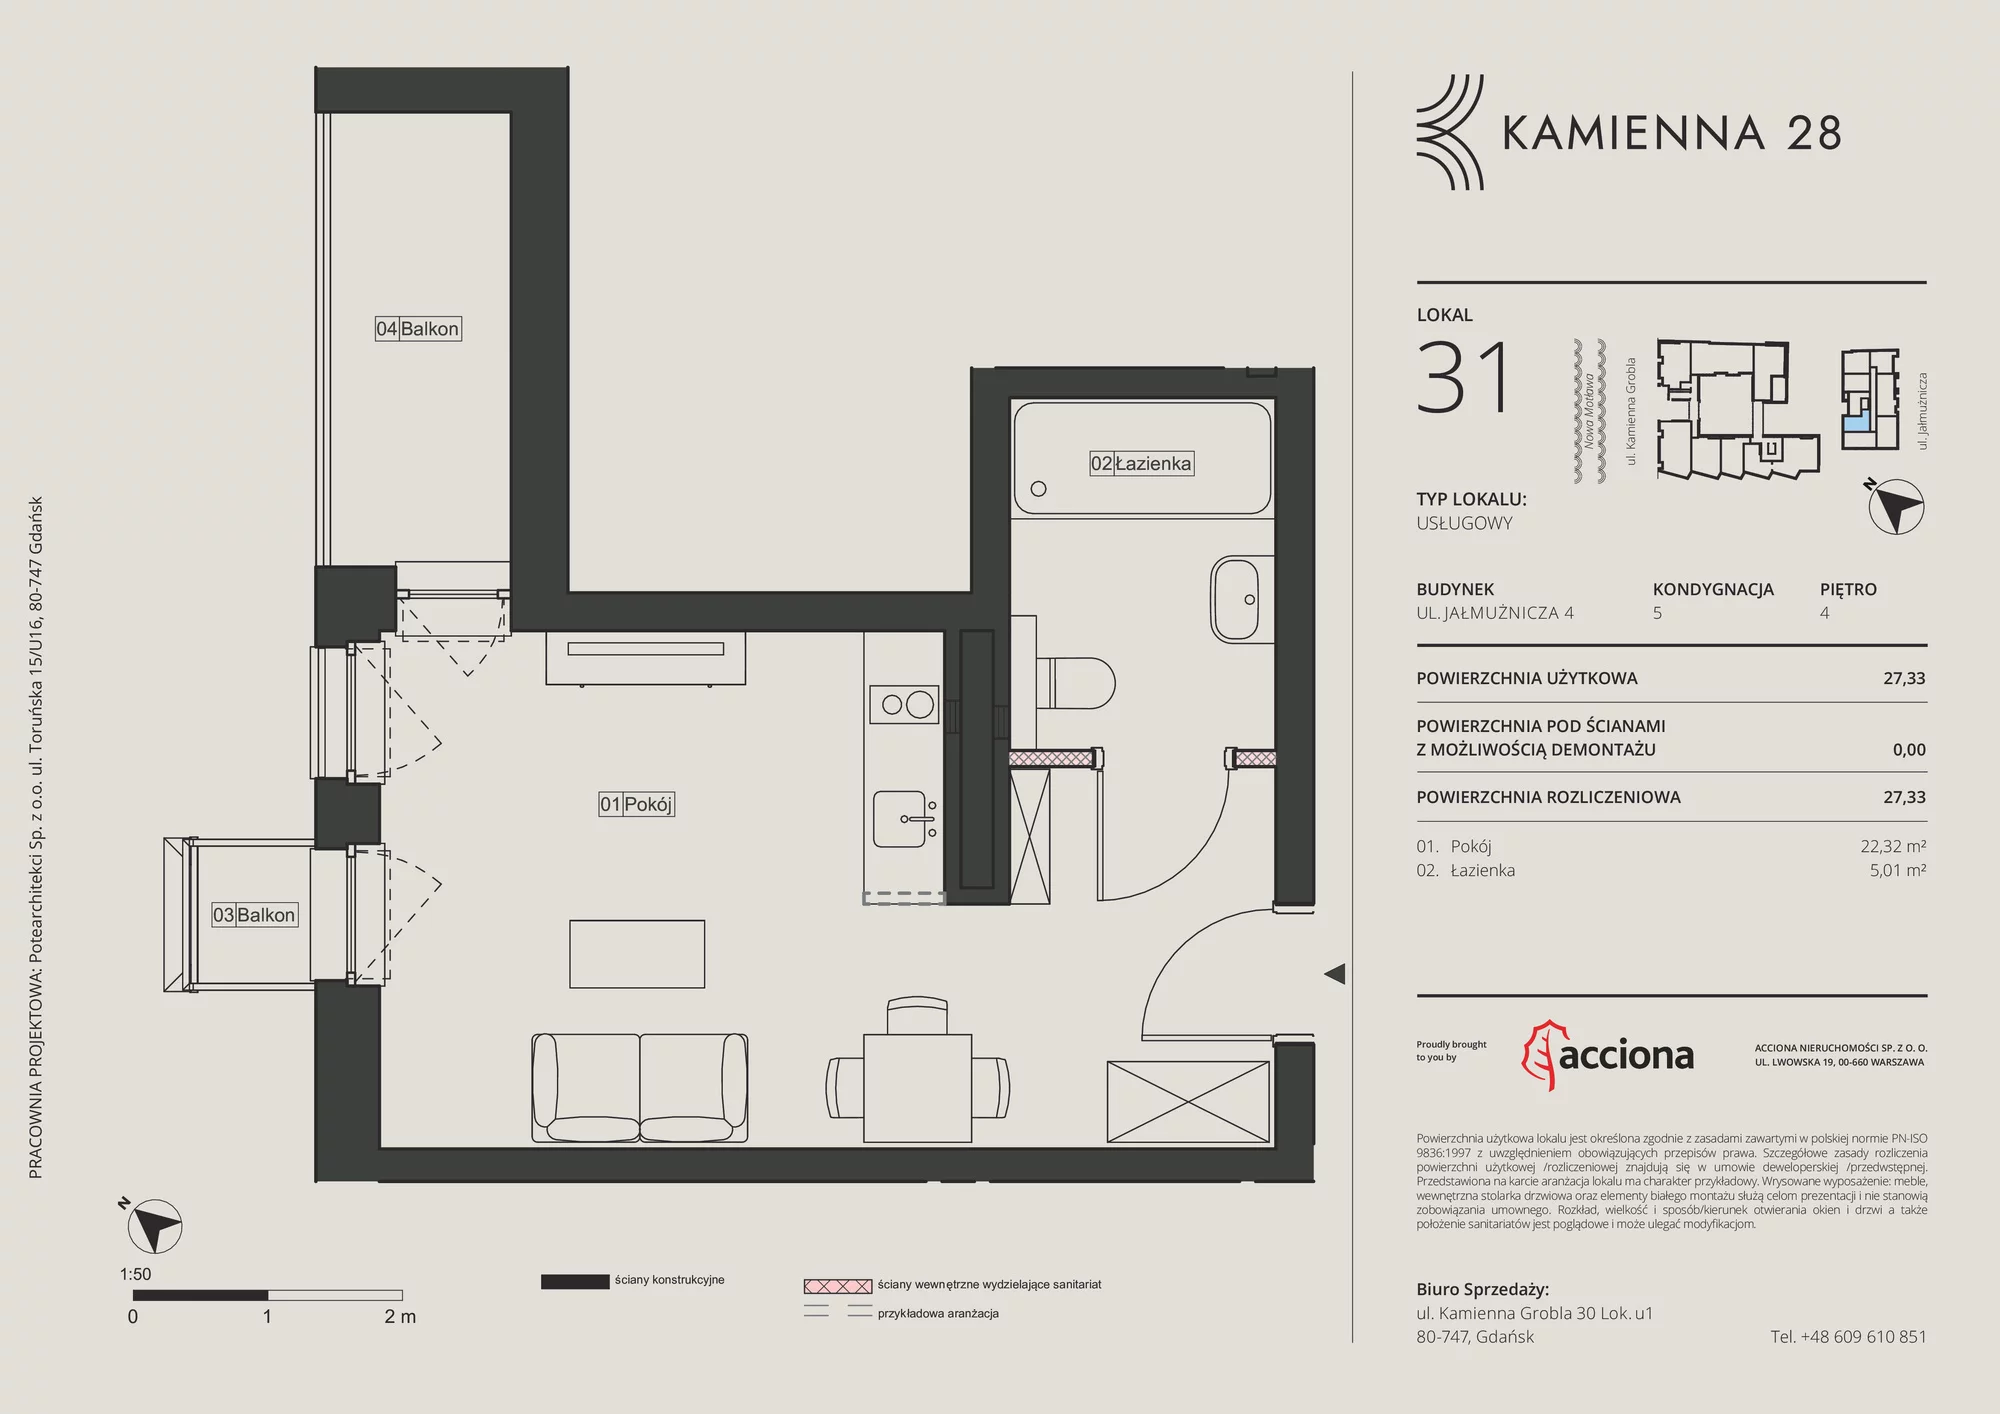 Apartament inwestycyjny 27,33 m², piętro 4, oferta nr 4.31, Kamienna 28 - apartamenty inwestycyjne, Gdańsk, Śródmieście, Dolne Miasto, ul. Jałmużnicza 4